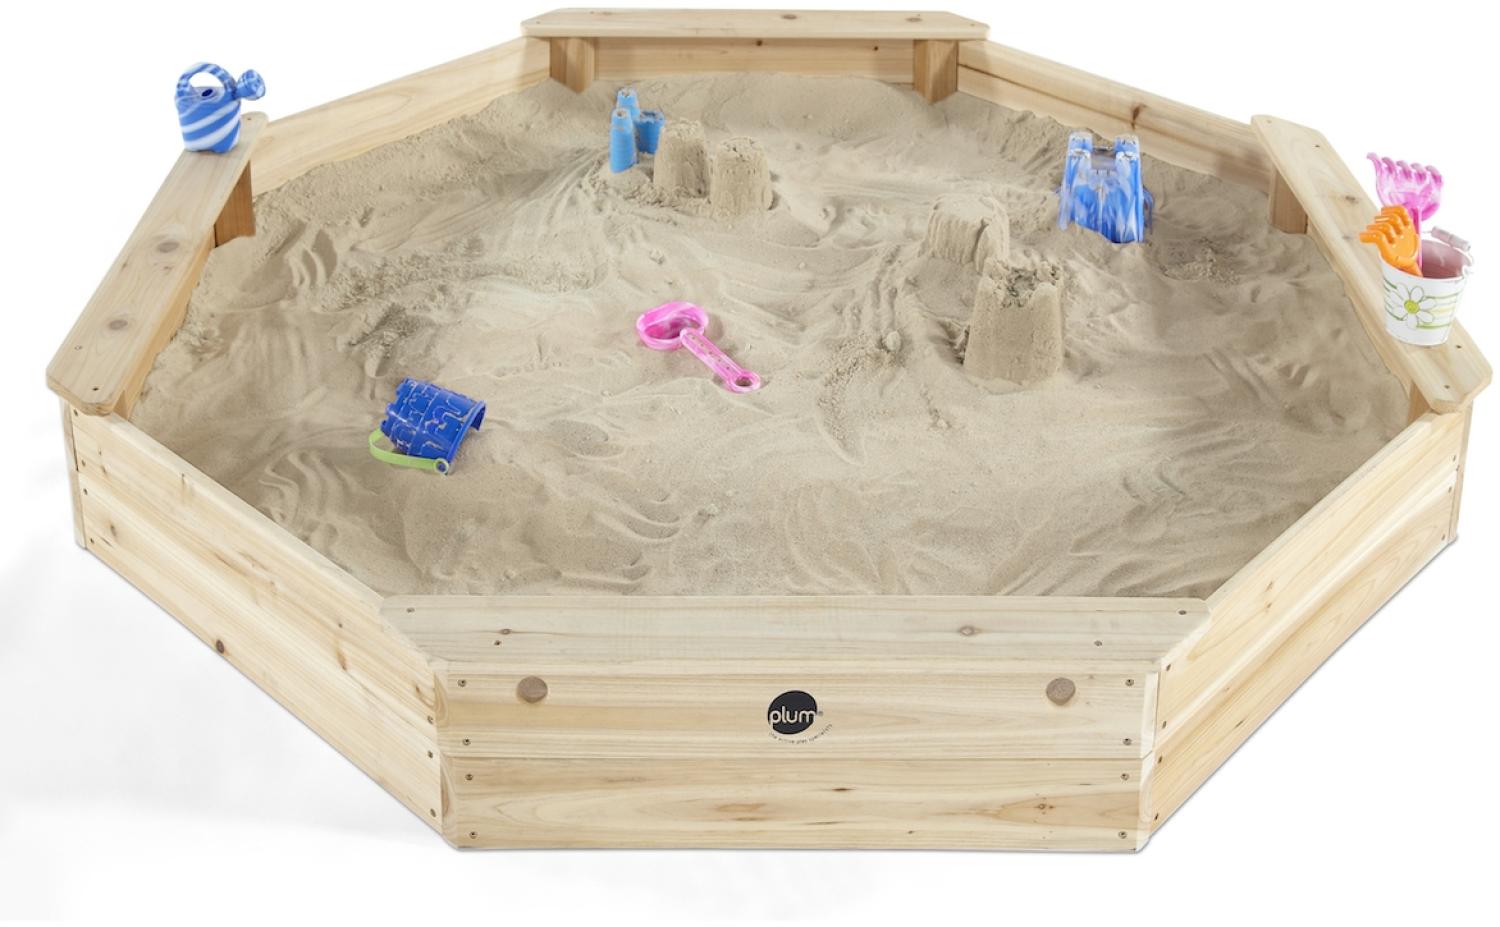 Plum gigantischer Kinder Sandkasten aus Holz mit Sitzbänken und Schutzhülle Bild 1